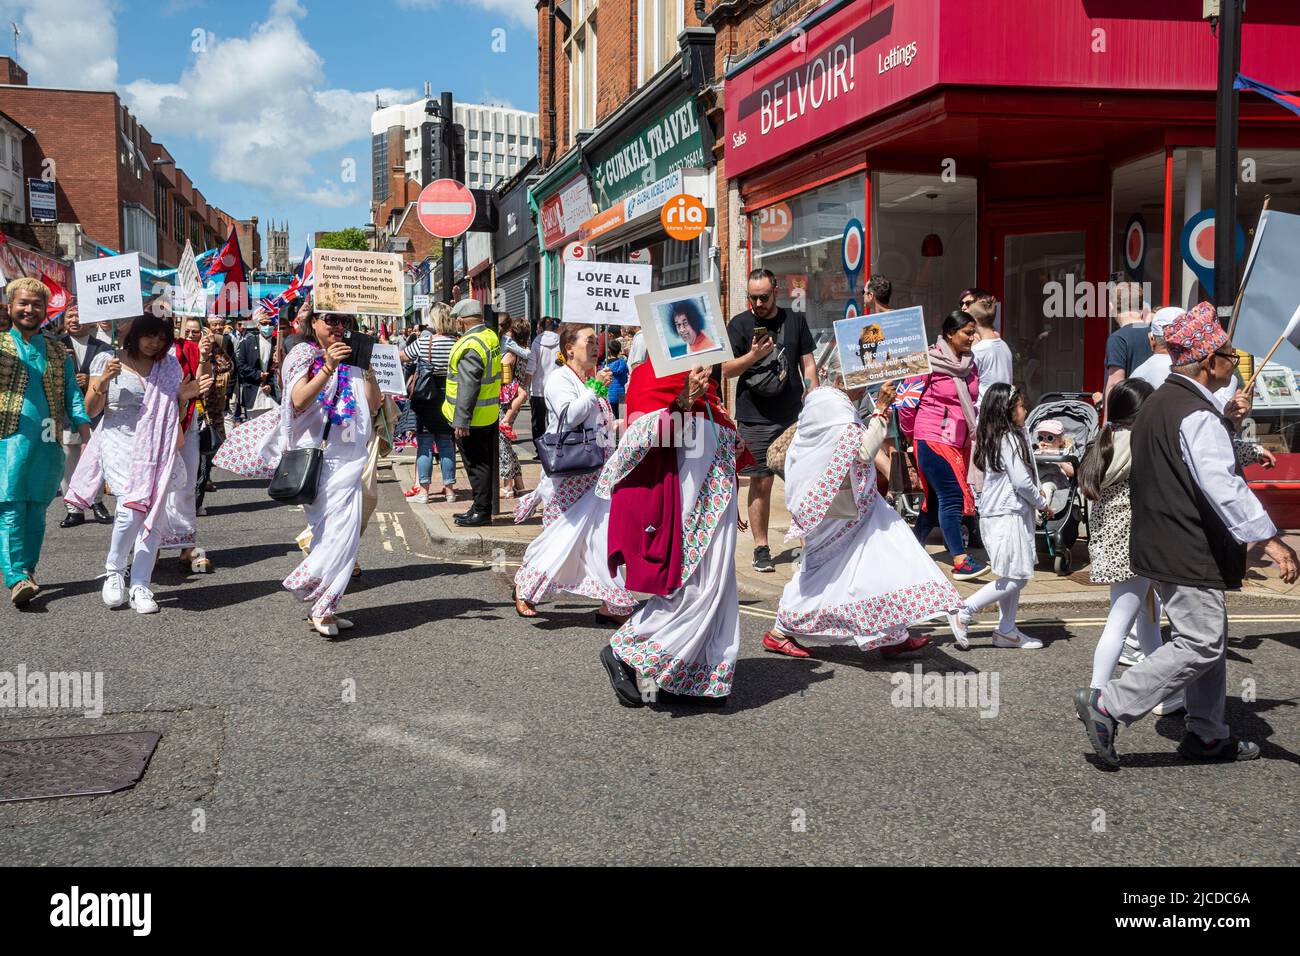 Le Grand Parade à la fête de Victoria, un événement annuel à Aldershot, Hampshire, Angleterre, Royaume-Uni. Les disciples du gourou indien Sathya Sai Baba qui participent. Banque D'Images